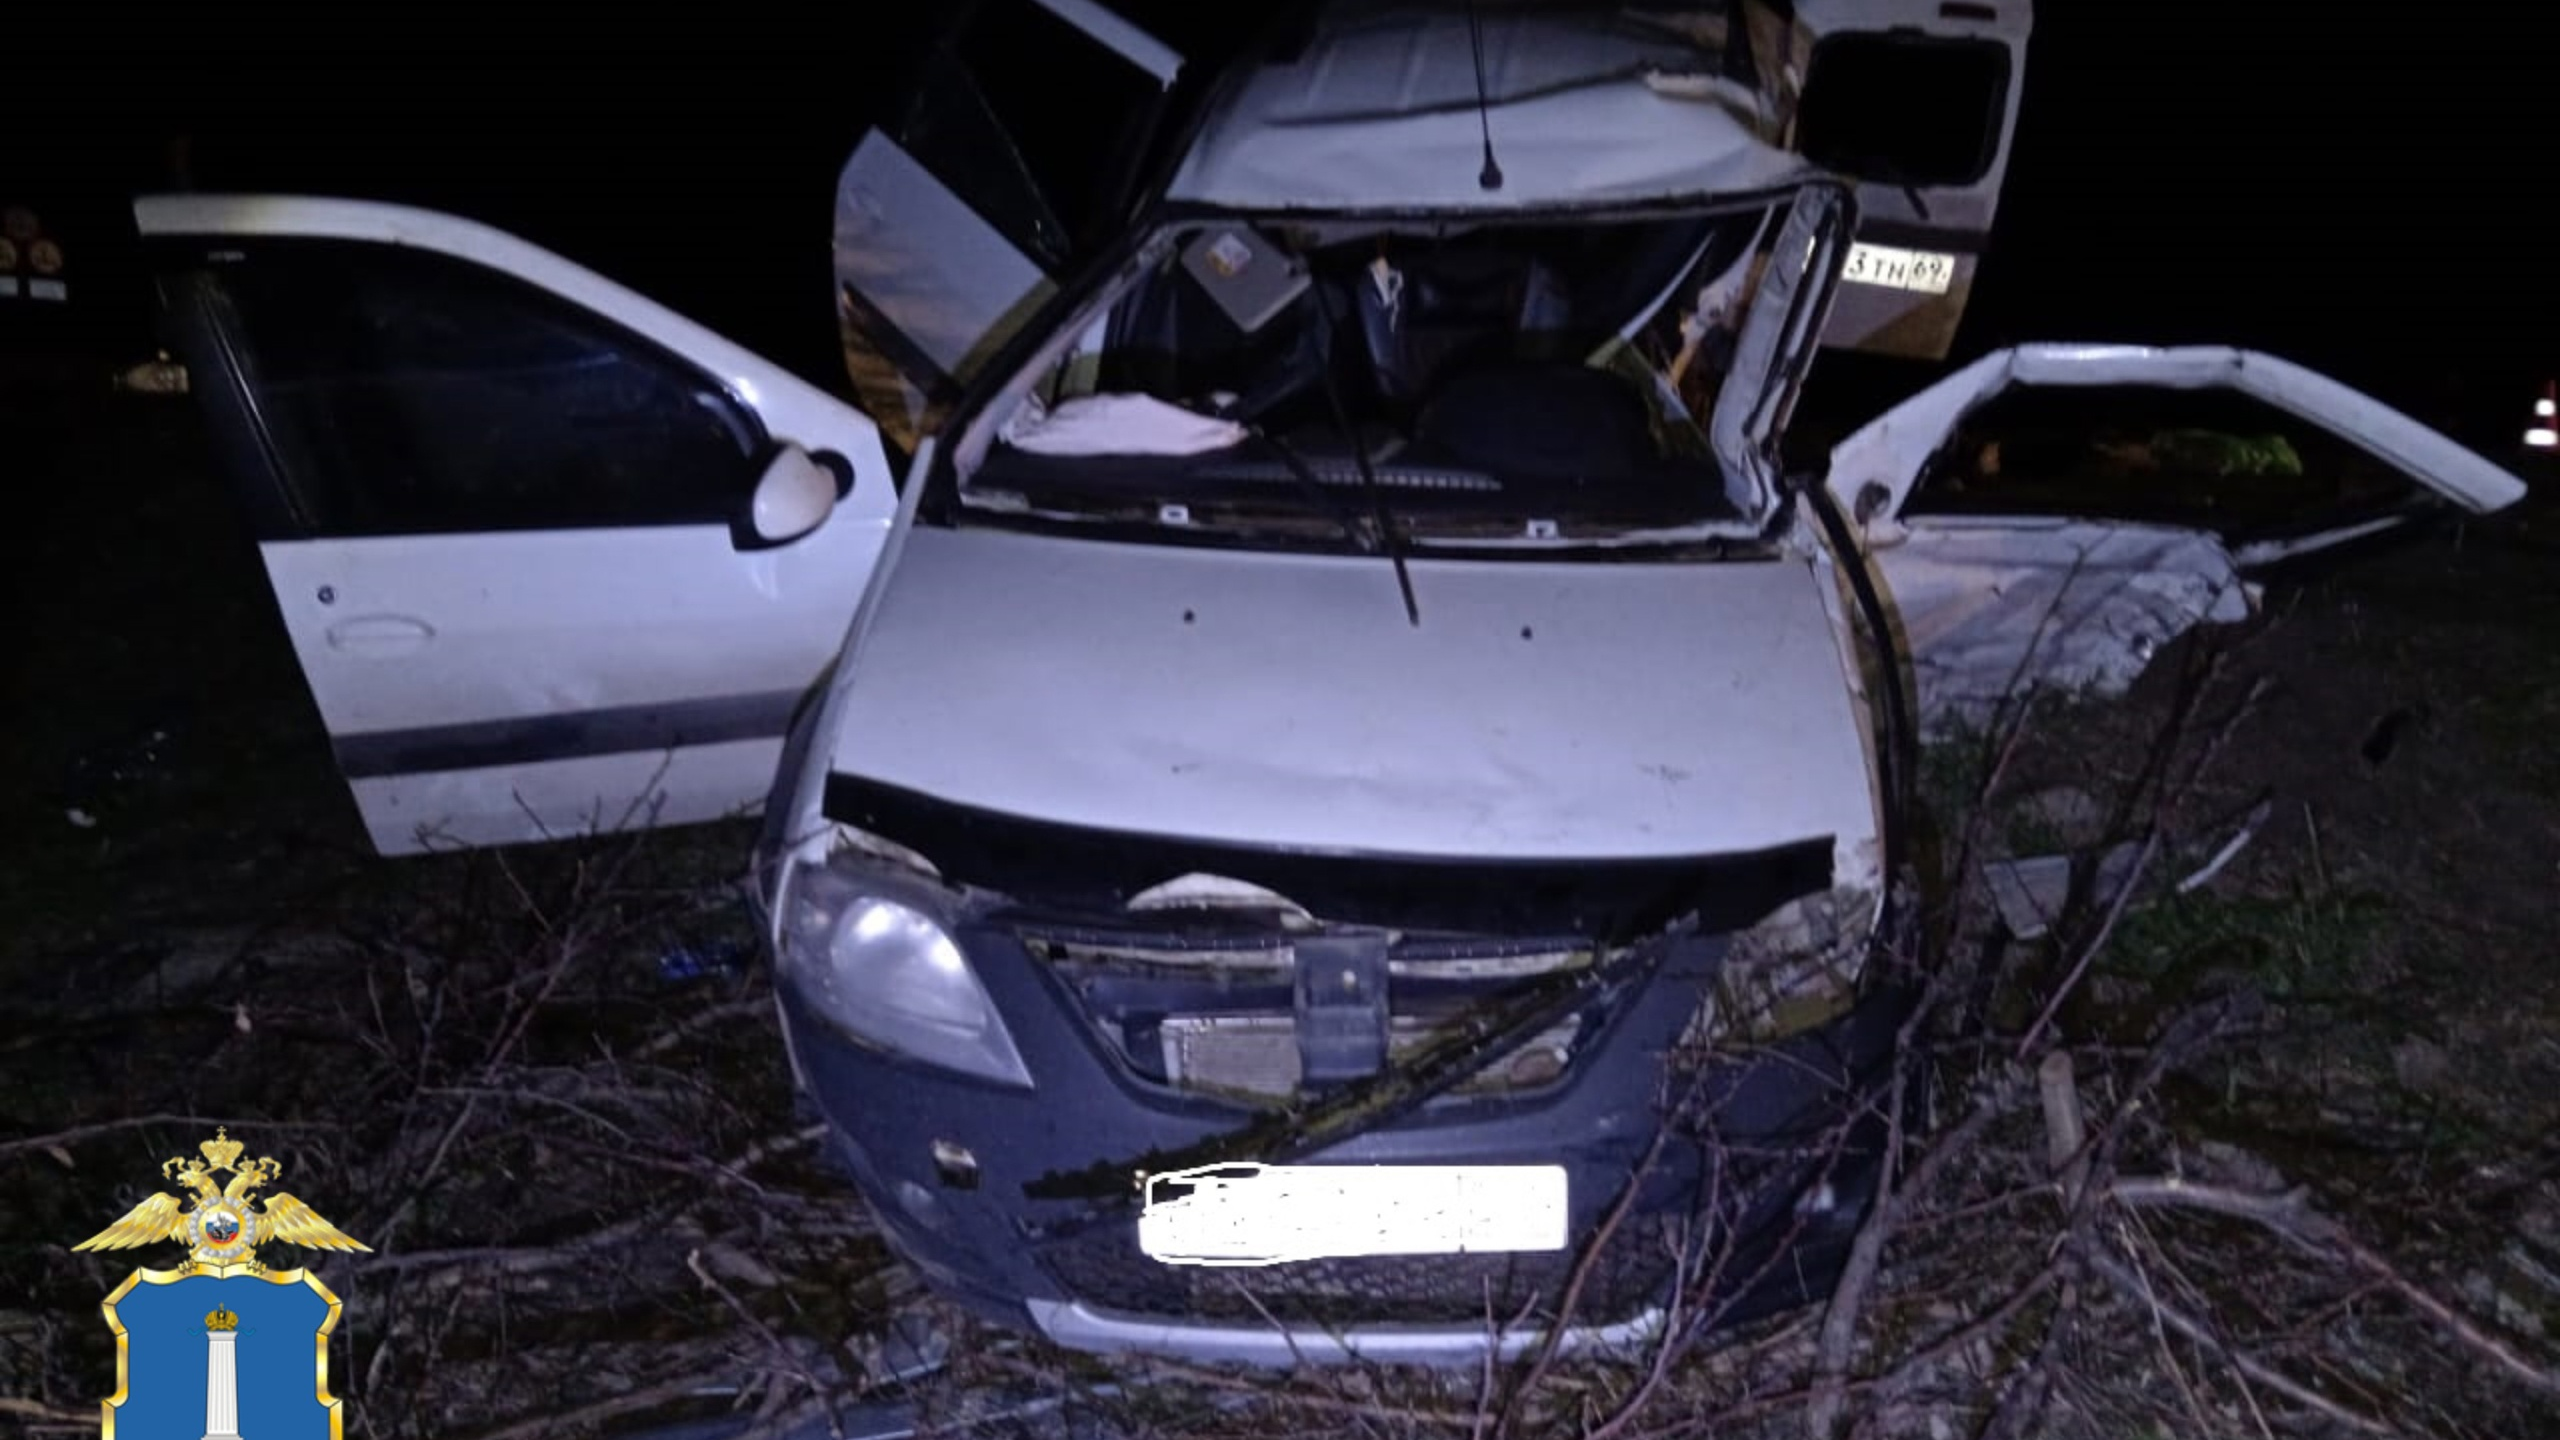 Ульяновская ГИБДД сообщила подробности аварии, в которой погиб мужчина и семь человек пострадали 